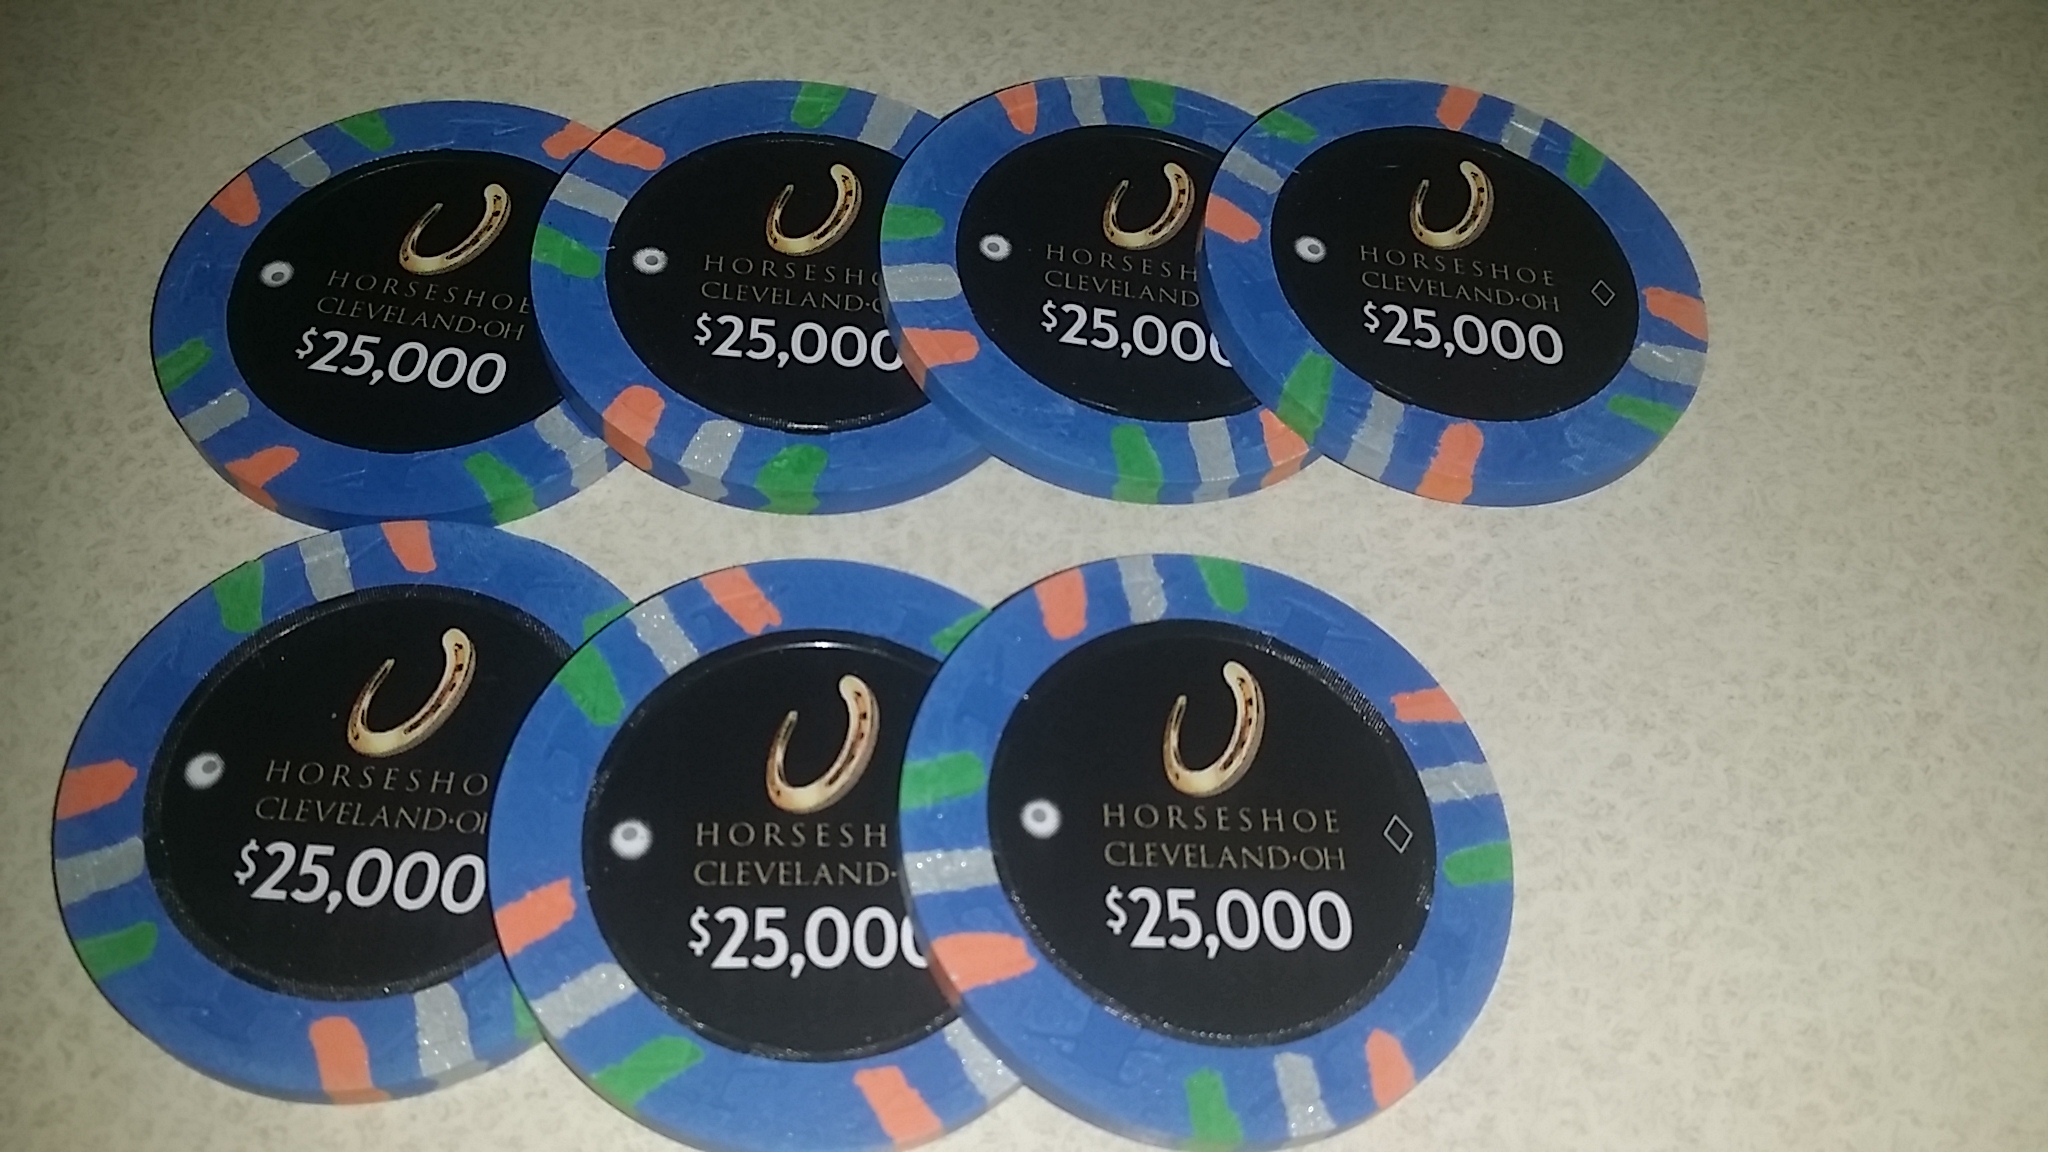 Horseshoe Casino Cleveland Chips - $25k